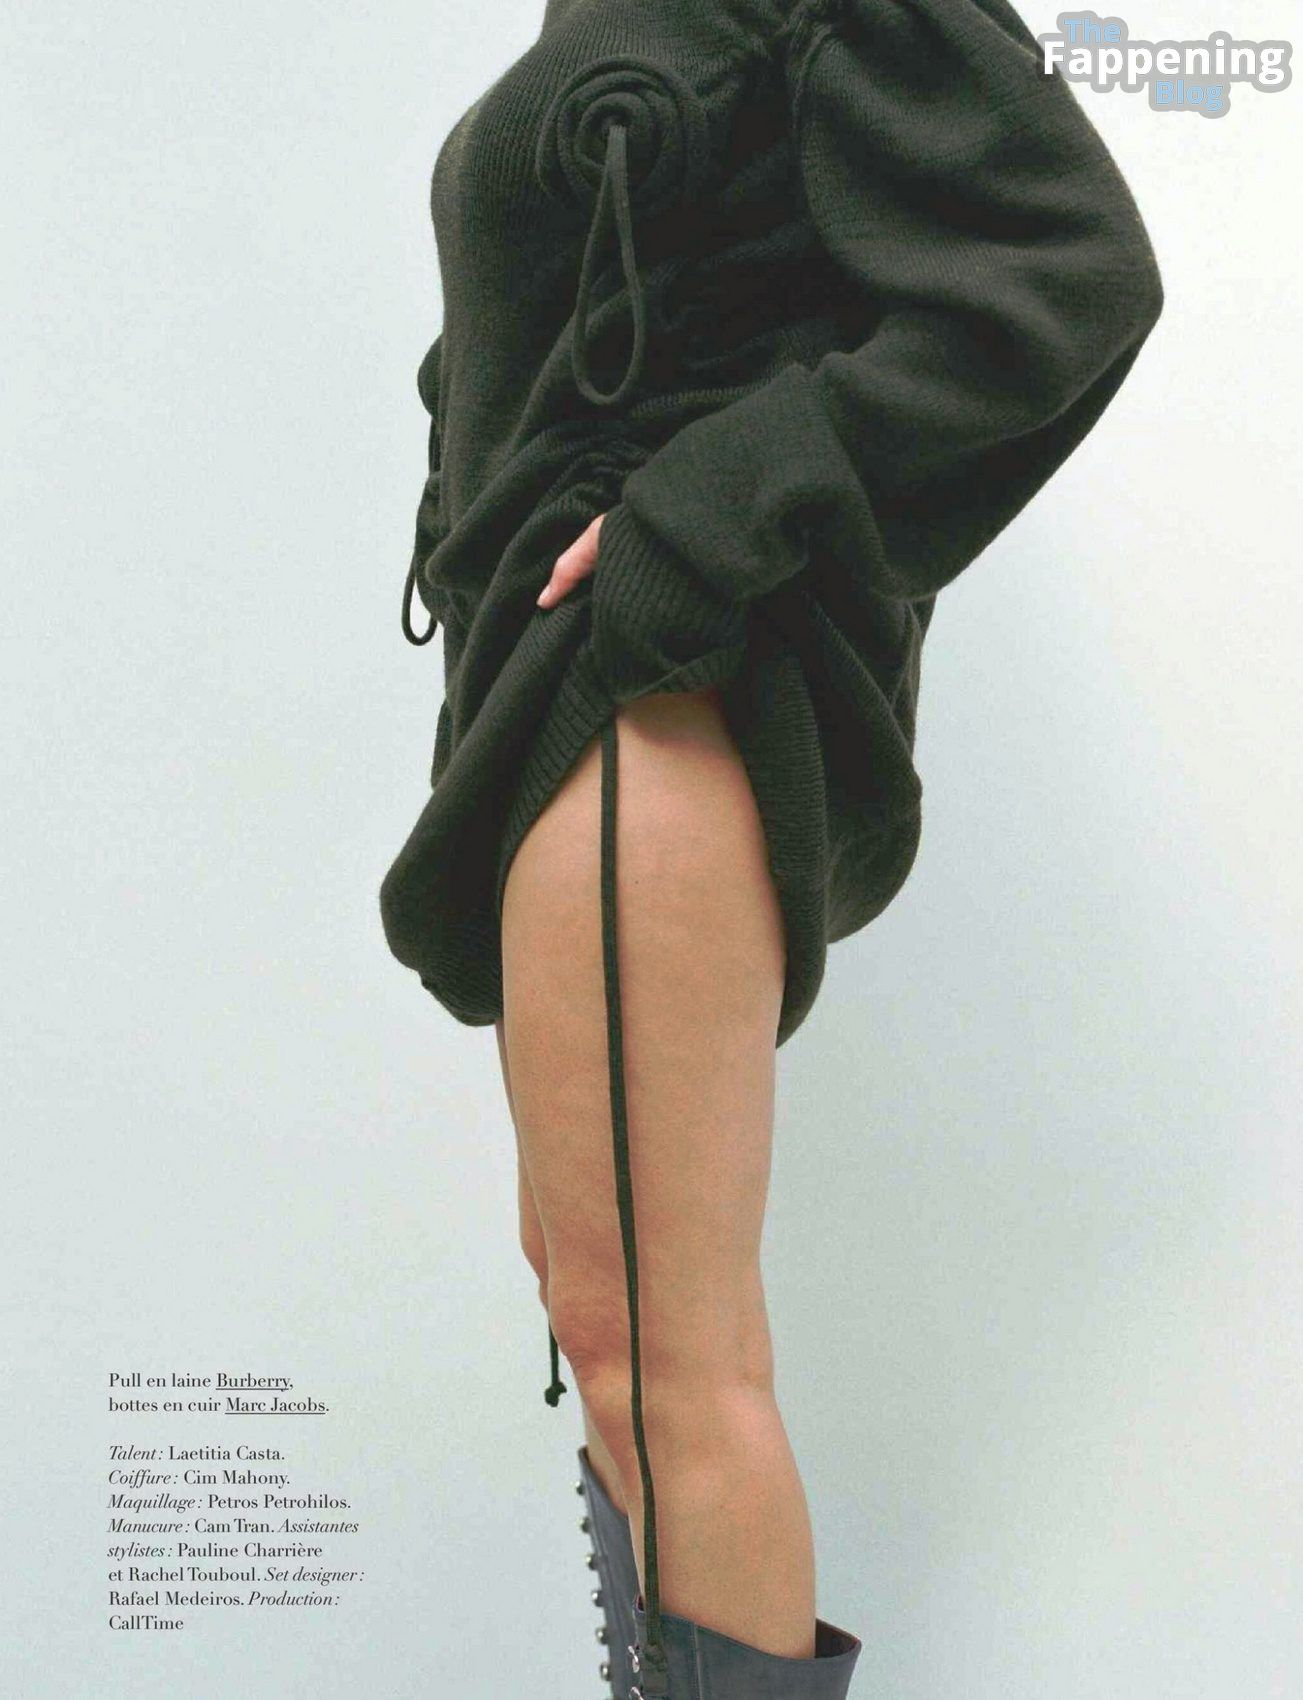 Laetitia Casta Nude &amp; Sexy – Harper’s Bazaar France August 2023 Issue (38 Photos)